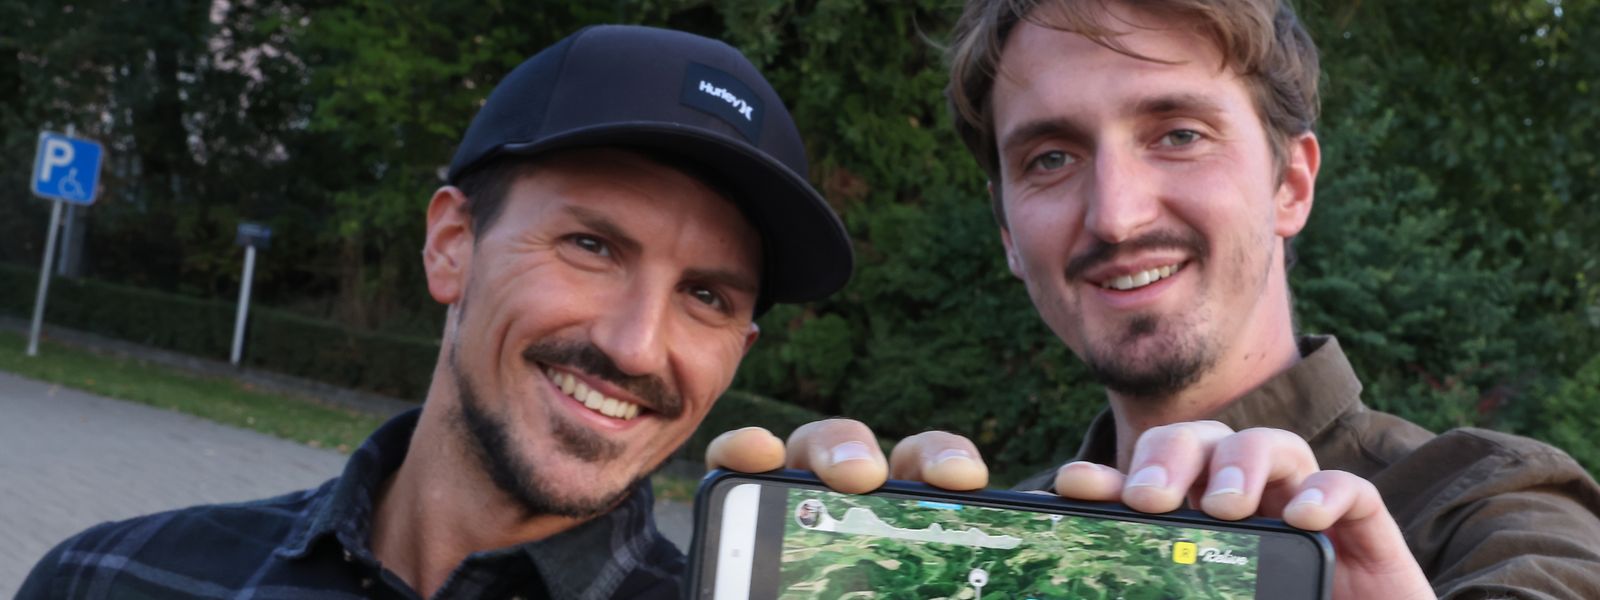 Ludovic Schinker (l.) und Thomas Dardare haben Luxemburg mit dem Kompass durchquert. Die genaue Route haben sie mit der App Relive festgehalten.